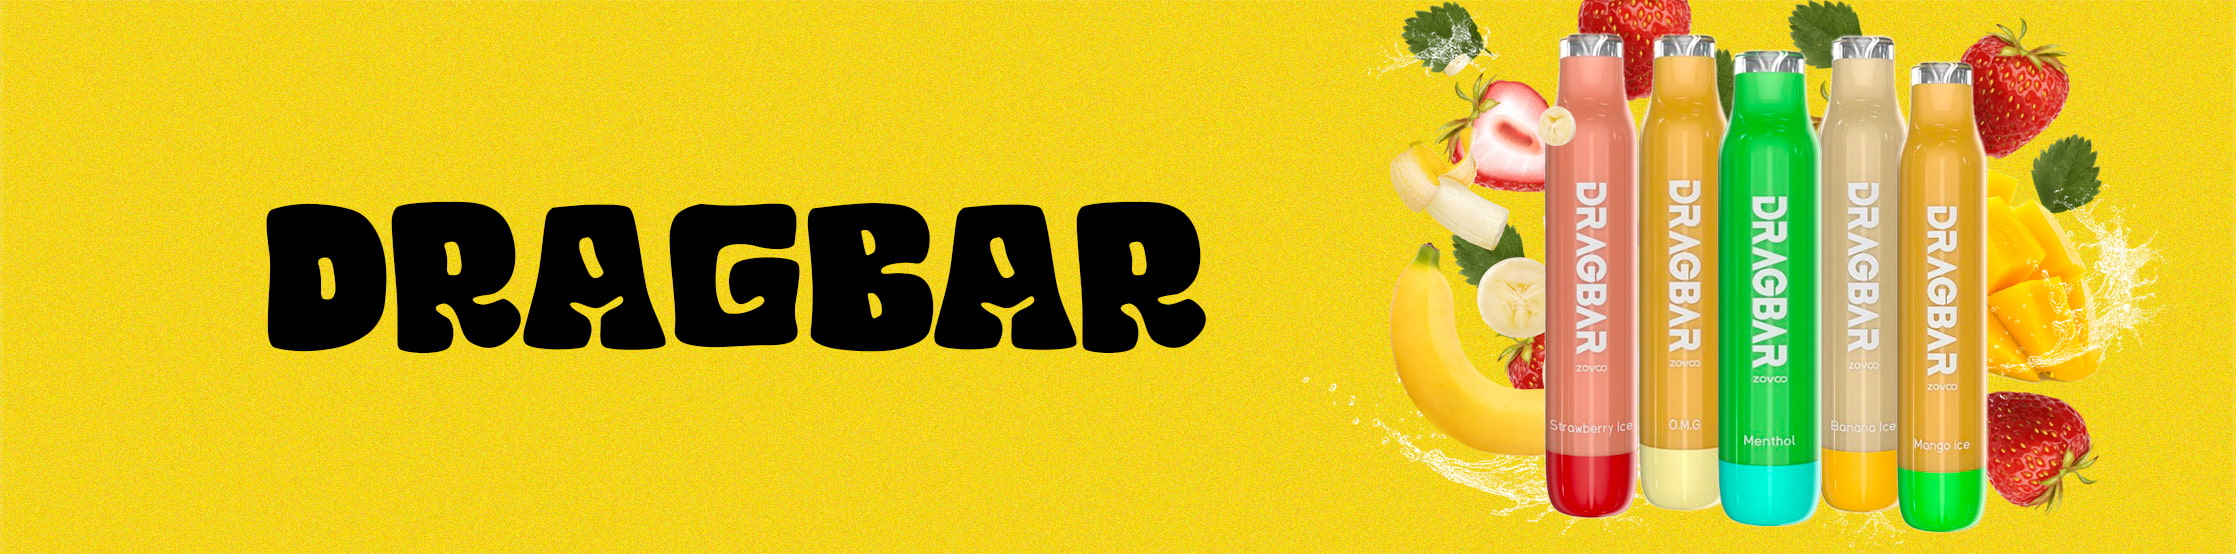 Drag Bar